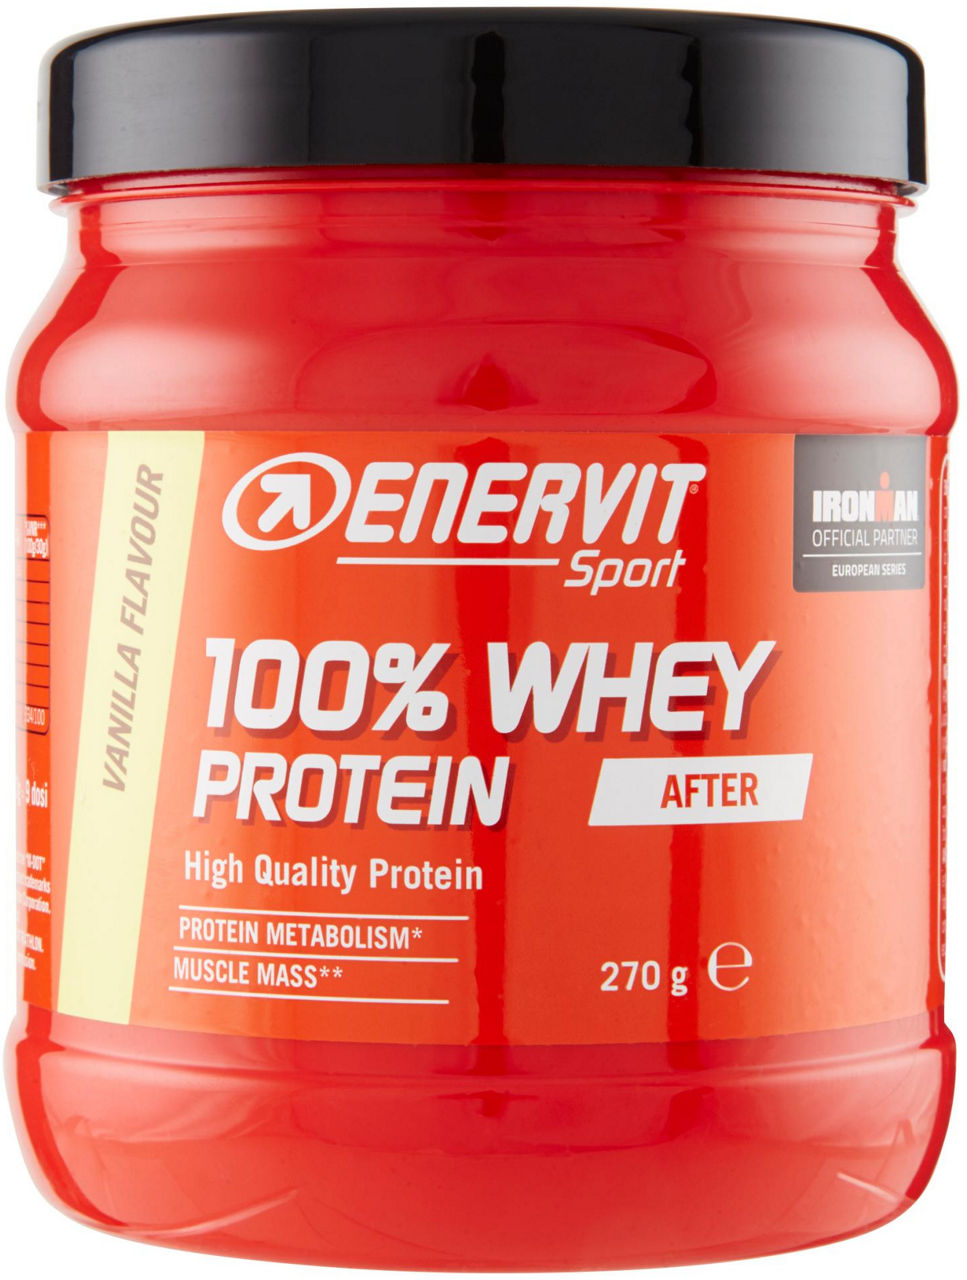 Enervit sport protein whey vaniglia gr.270